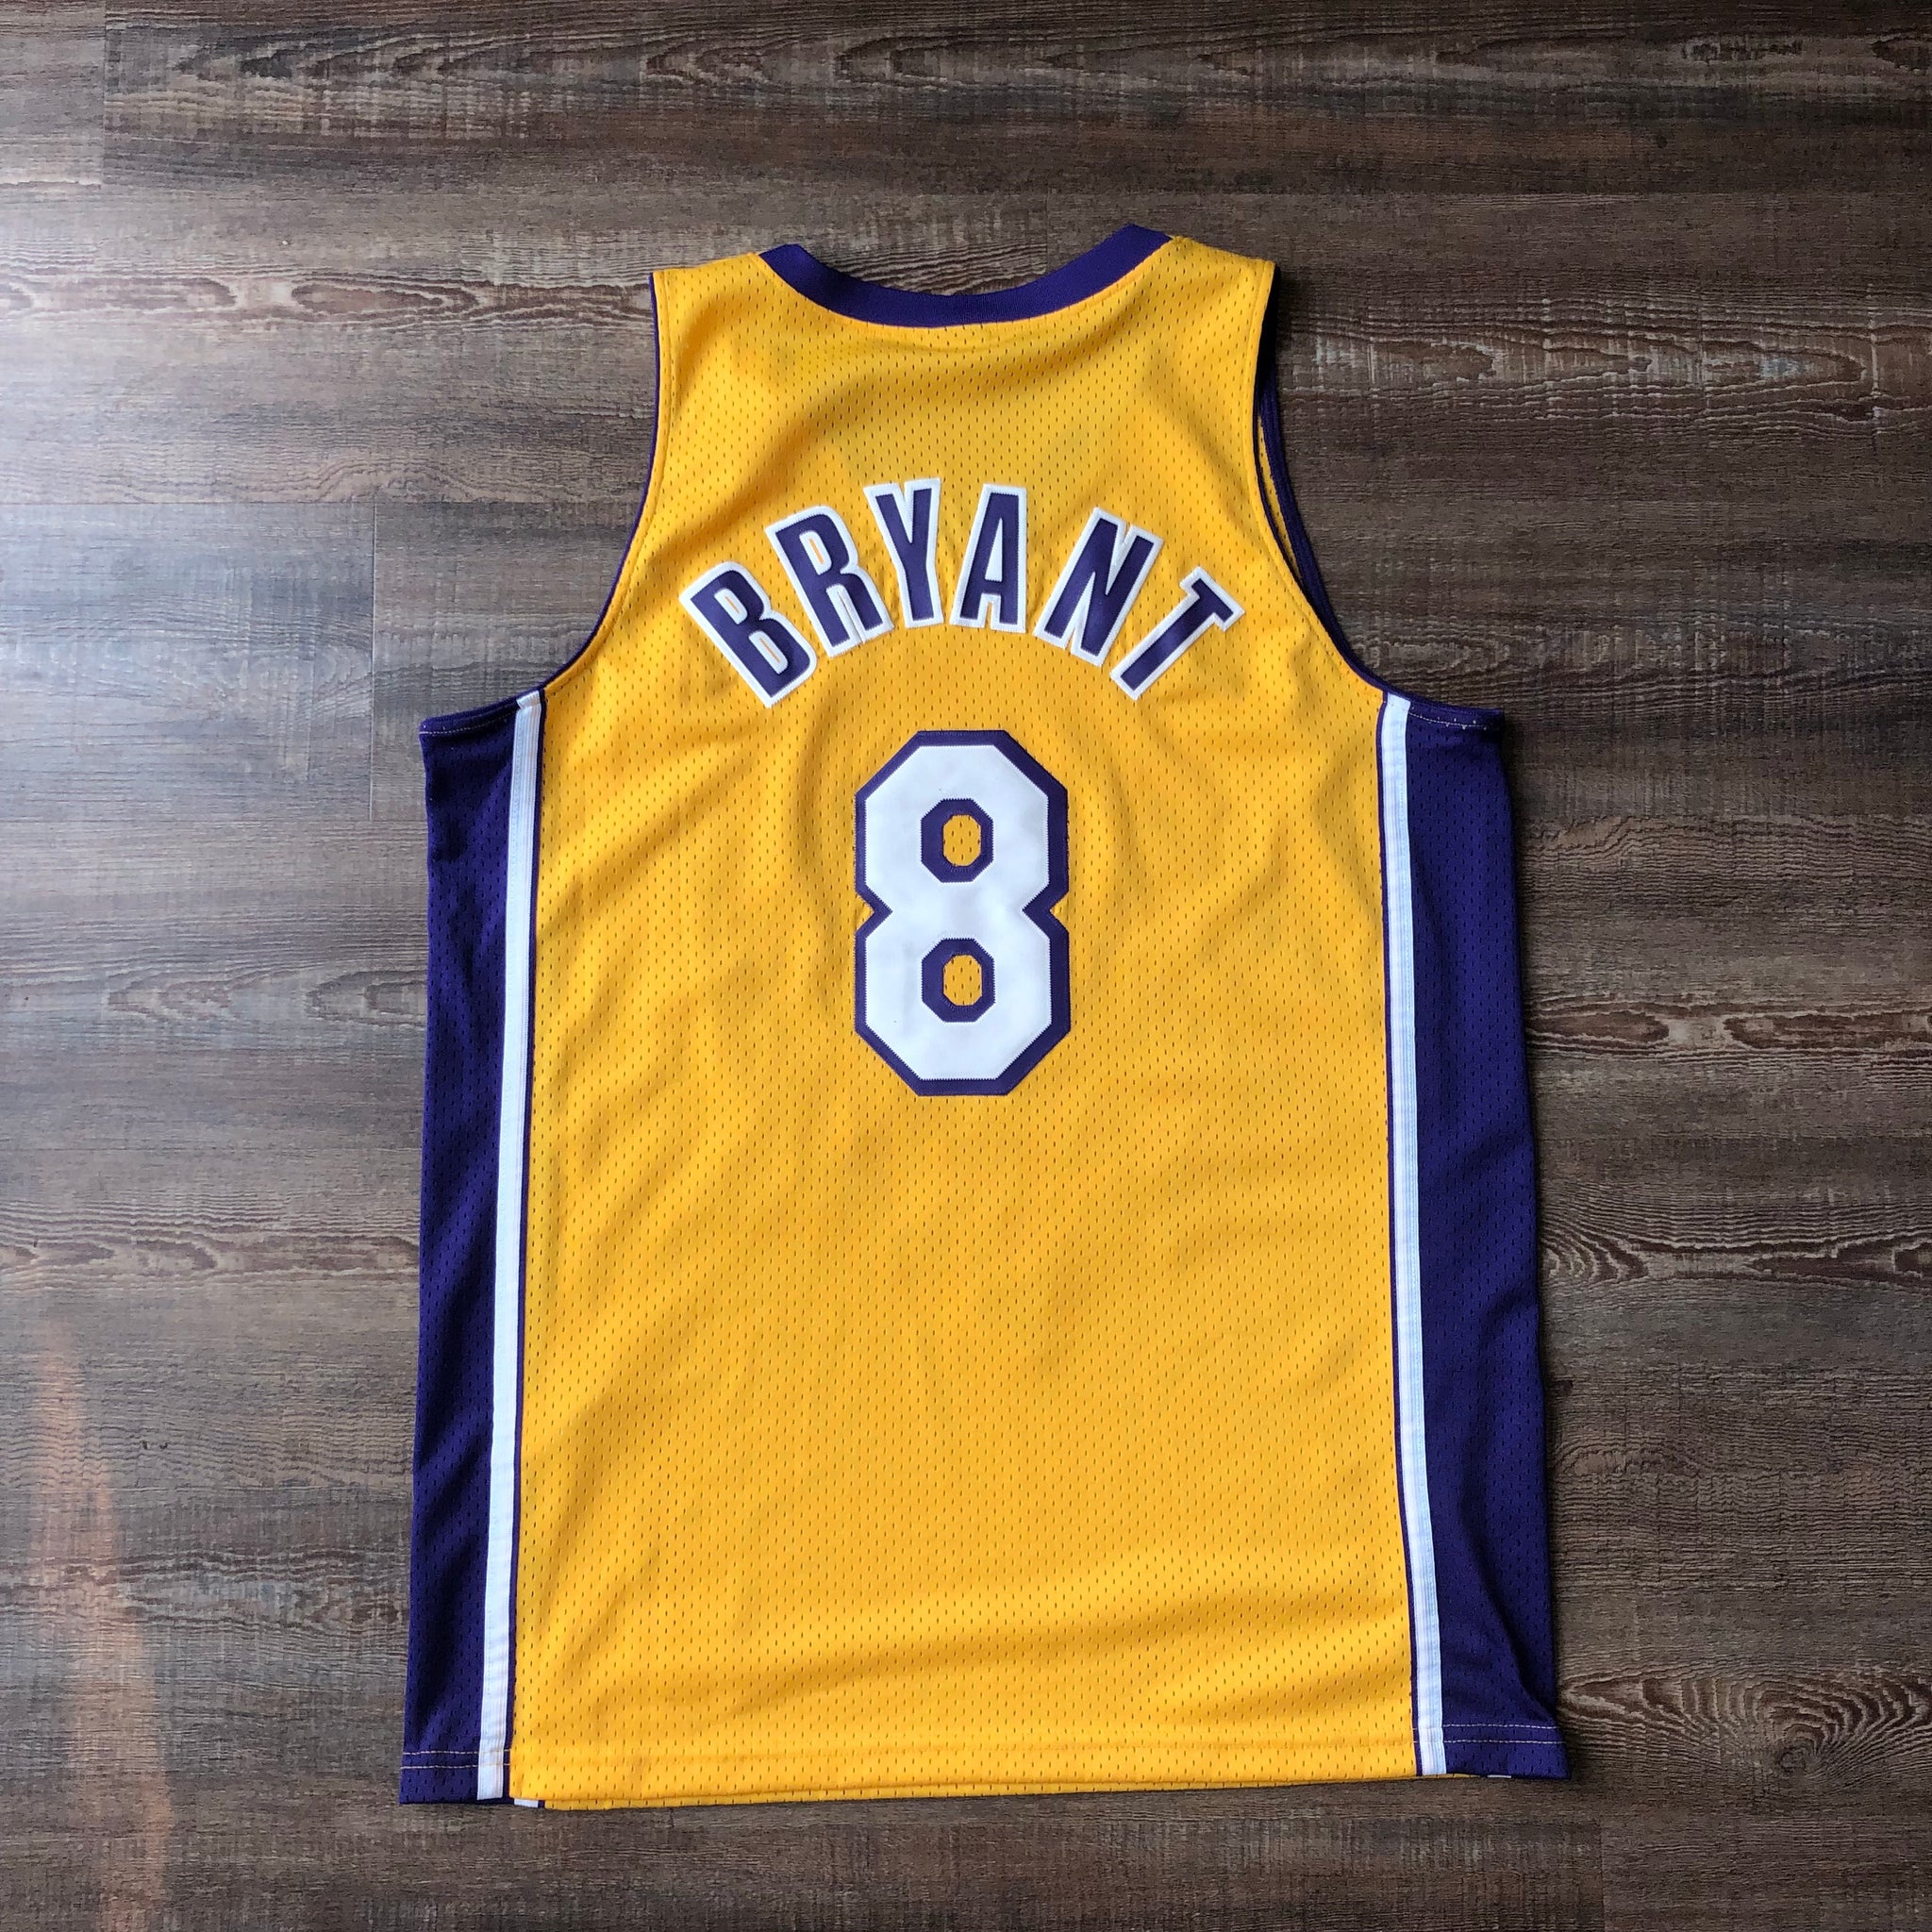 Kobe Bryant Jerseys, Kobe Bryant Shirt, Kobe Bryant Gear & Merchandise